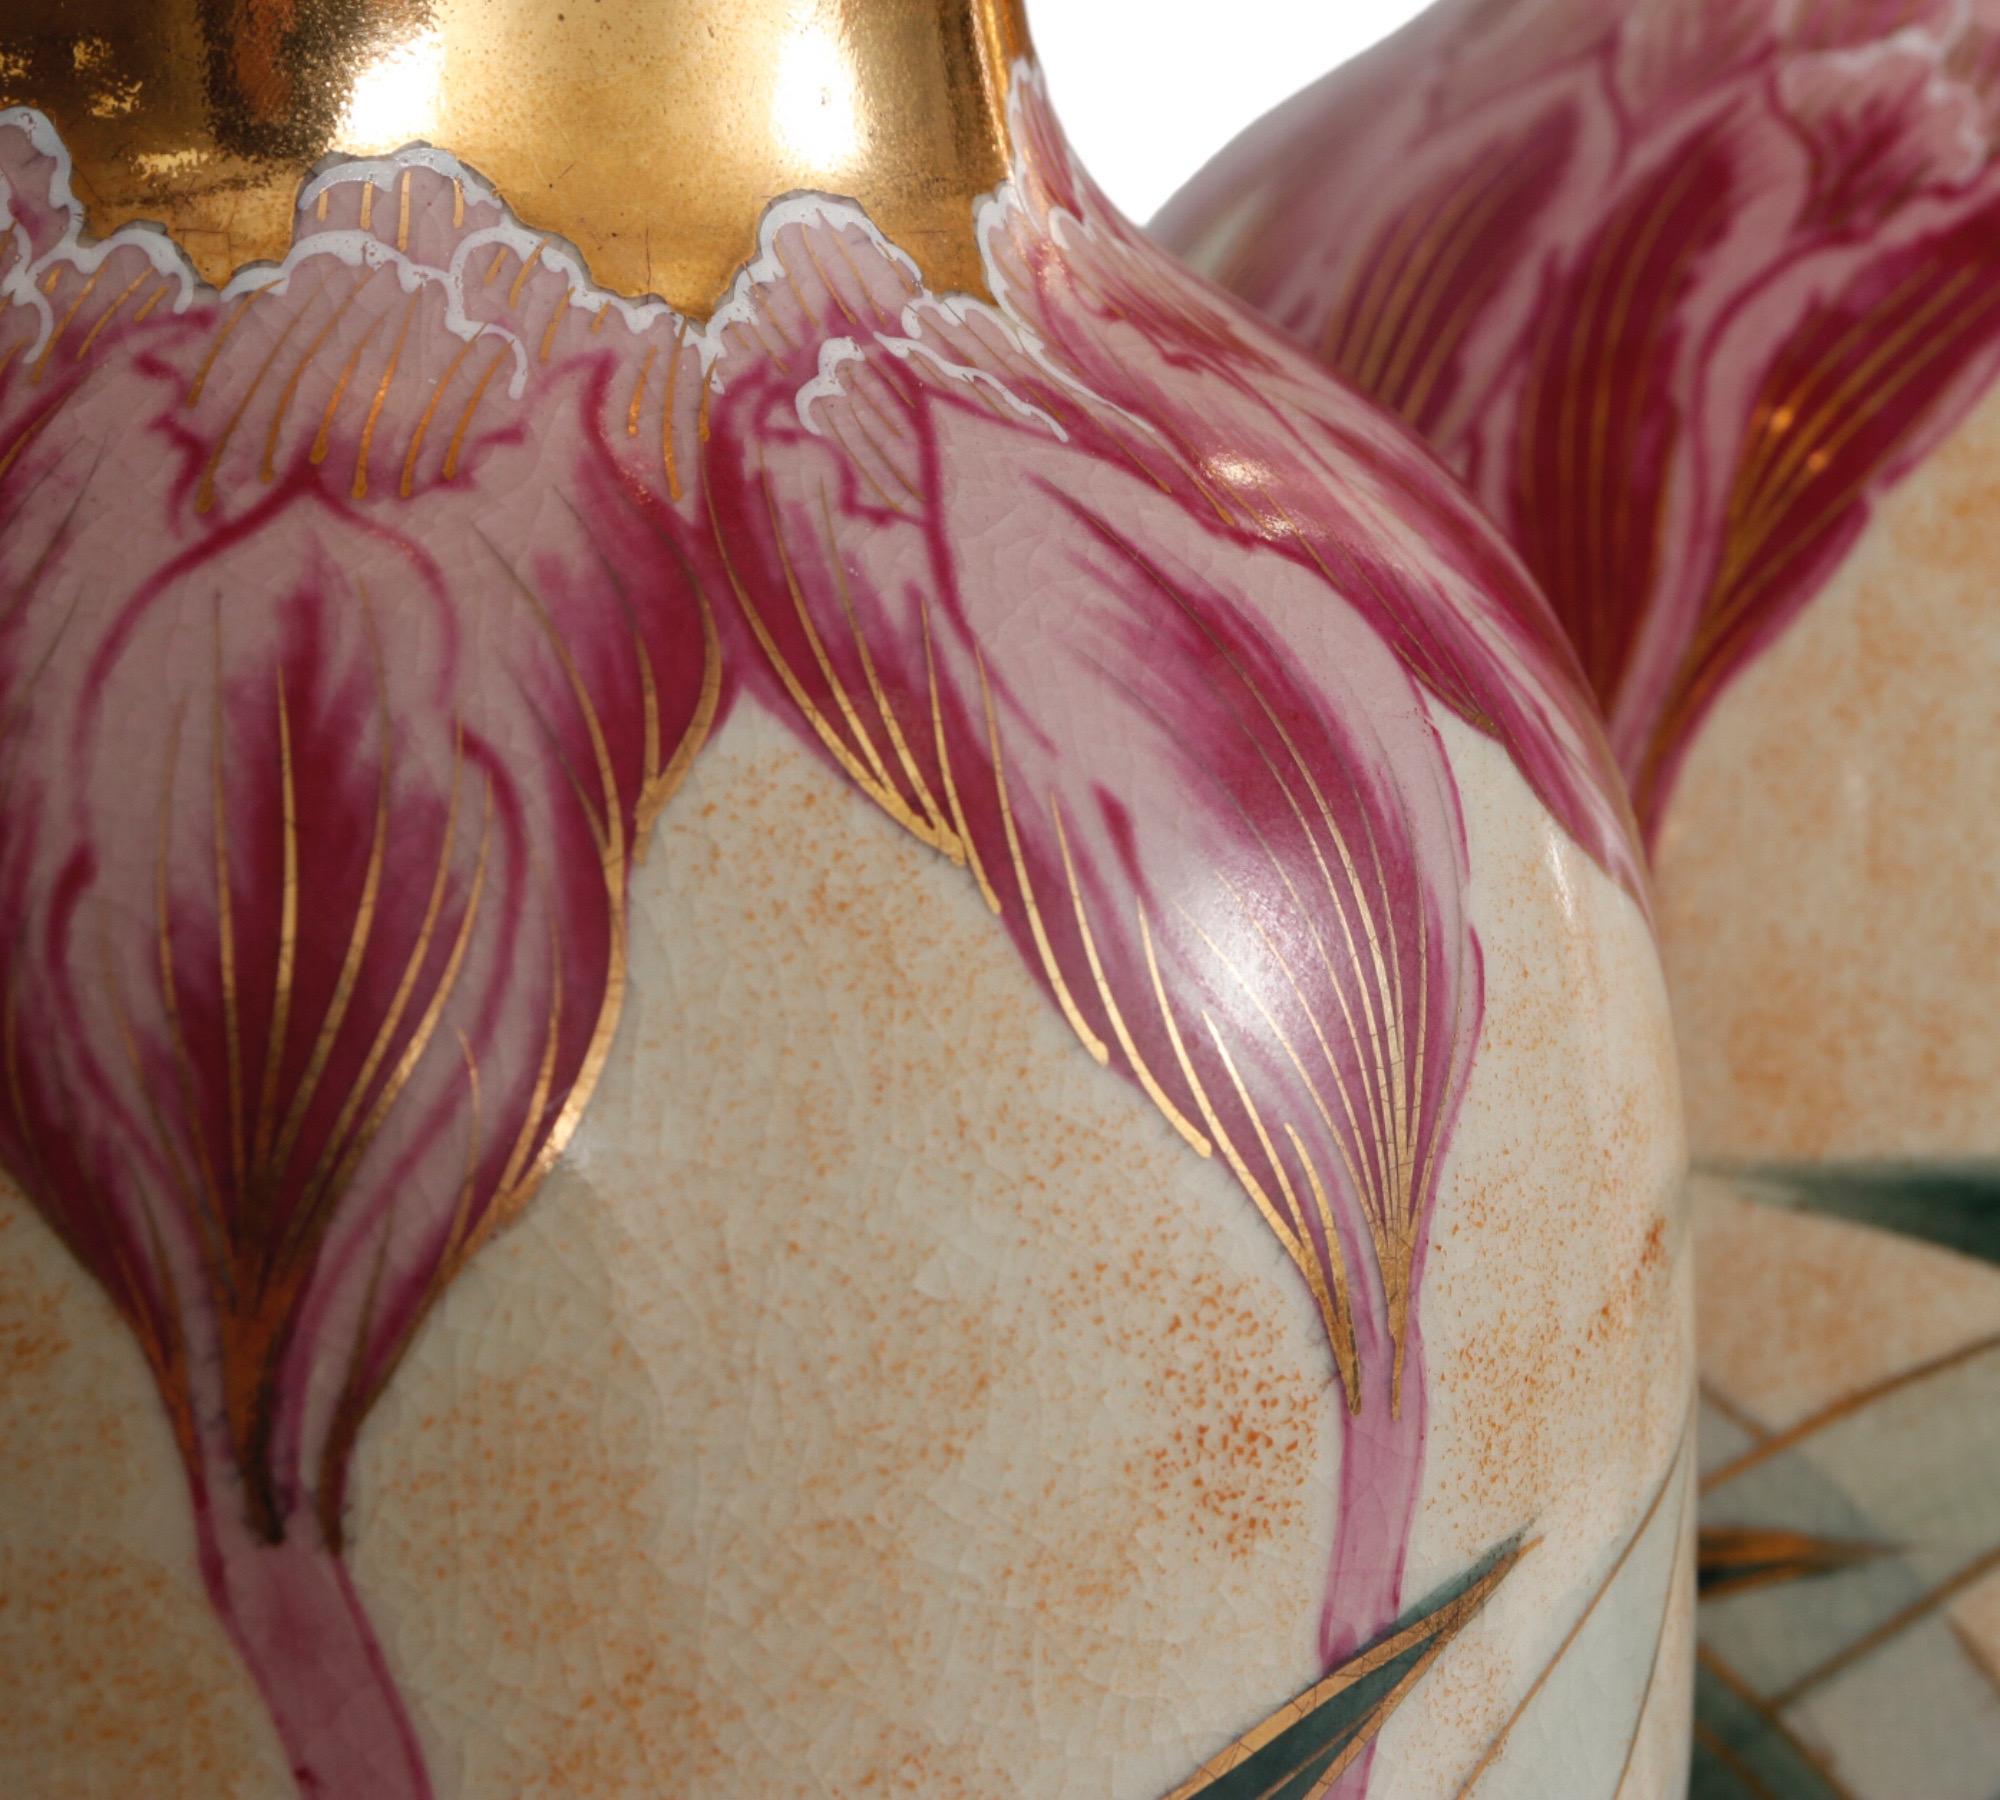 20th Century Japanese Art Nouveau Ceramic Vases - a Pair For Sale